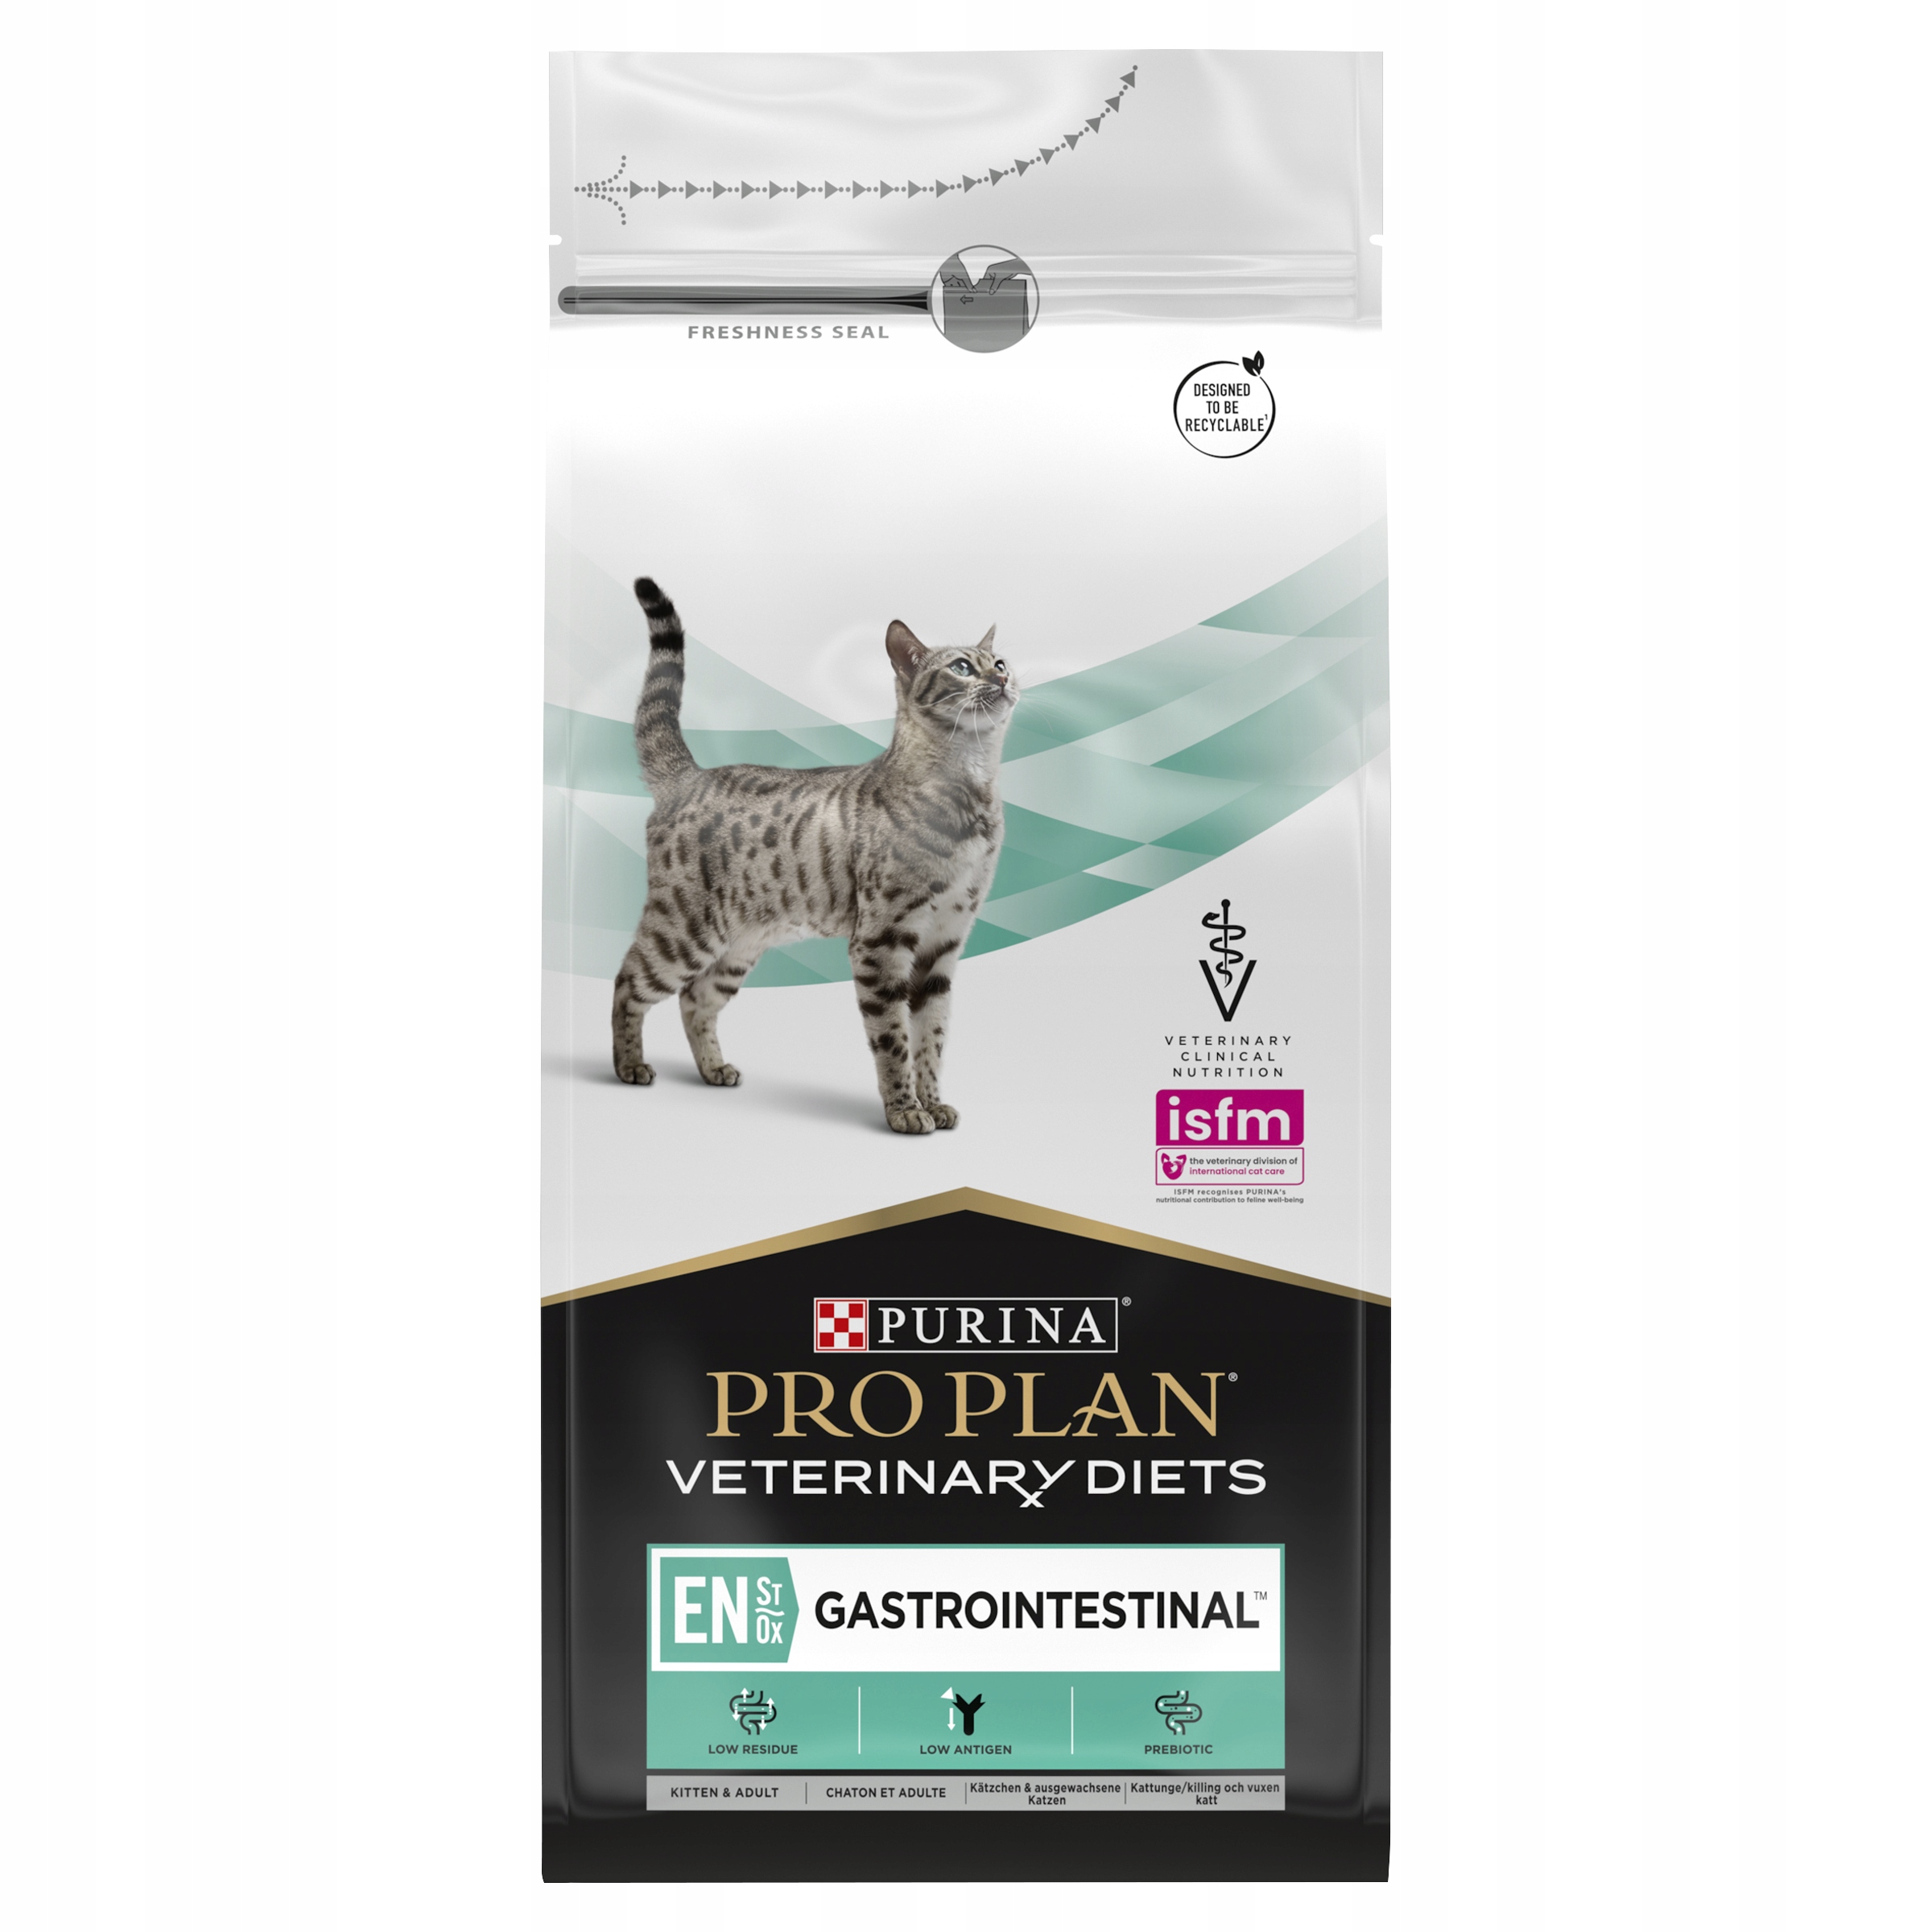 Purina PRO PLAN Veterinární dieta EN Pro kočky 1,5 kg za 460 Kč - Allegro